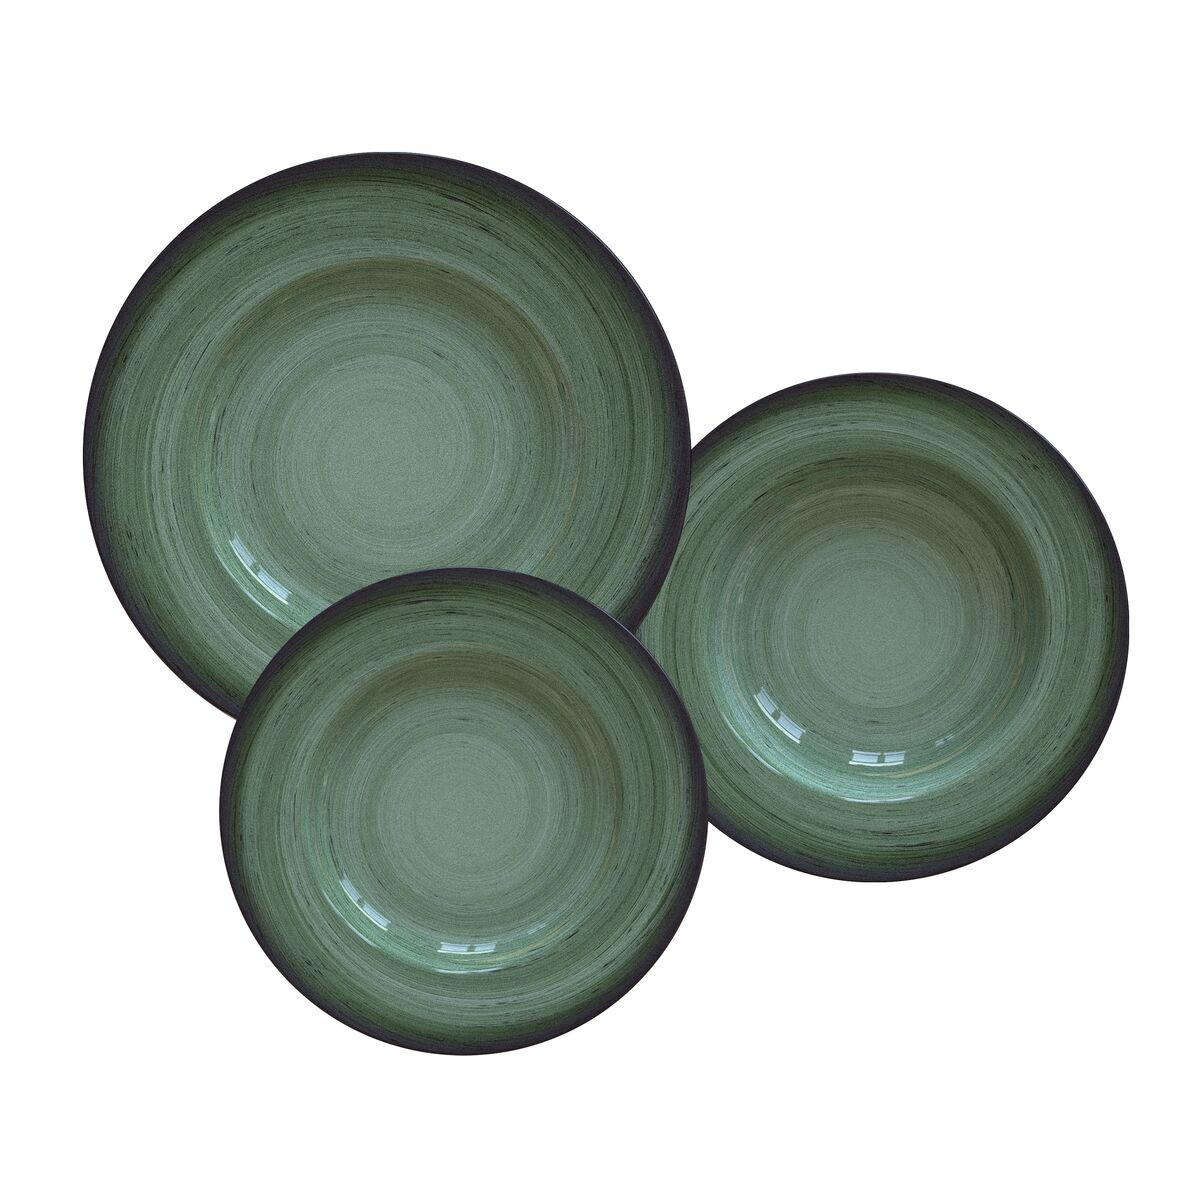 Jogo de Pratos Tramontina Rústico Verde em Porcelana Decorada 12 Peças